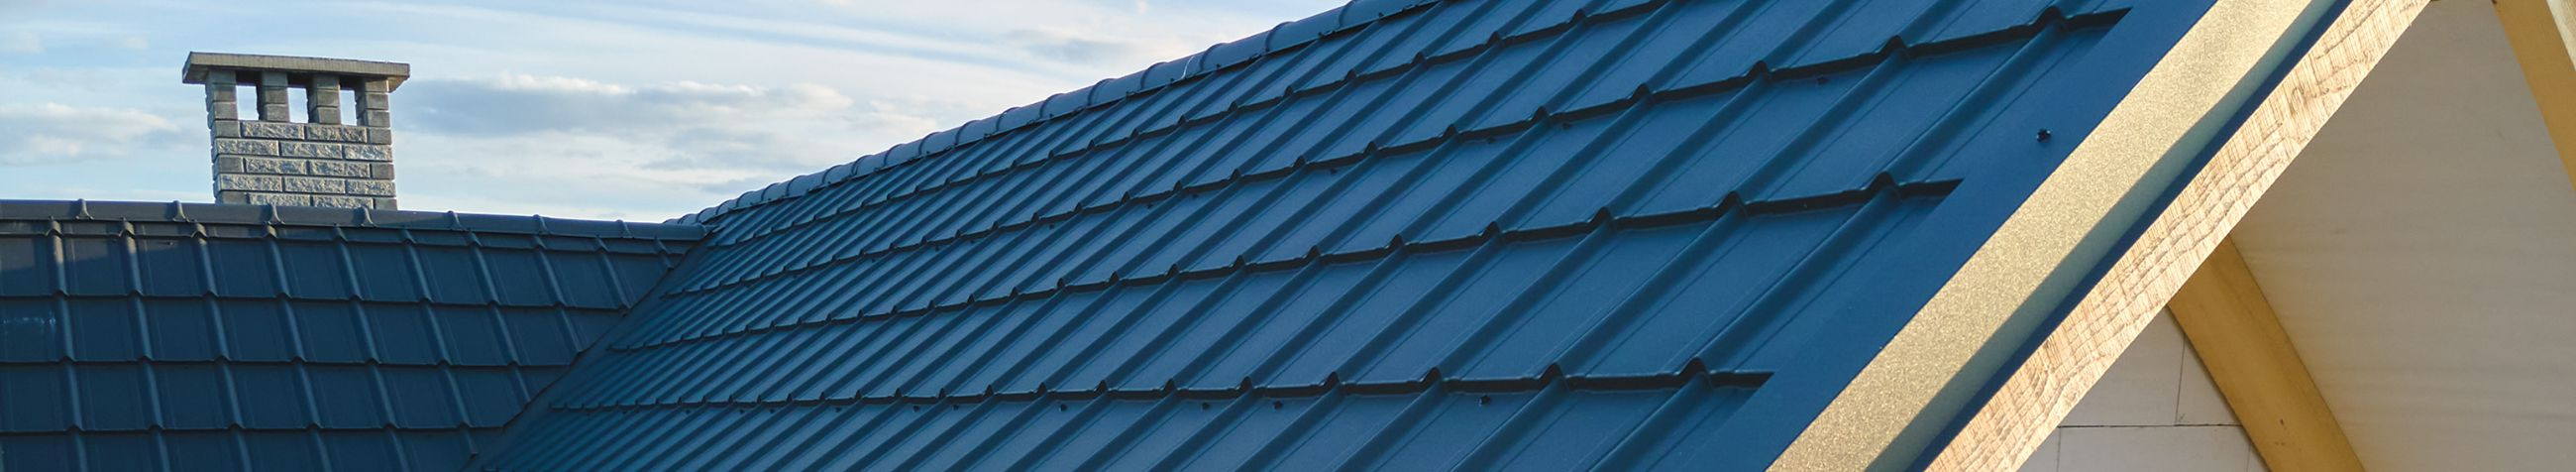 Oleme spetsialiseerunud katuste ehitusele, renoveerimisele ja plekitöödele, pakkudes kvaliteetseid katuseteenuseid alates SBS lamekatuste paigaldusest kuni katusstruktuuri renoveerimiseni.